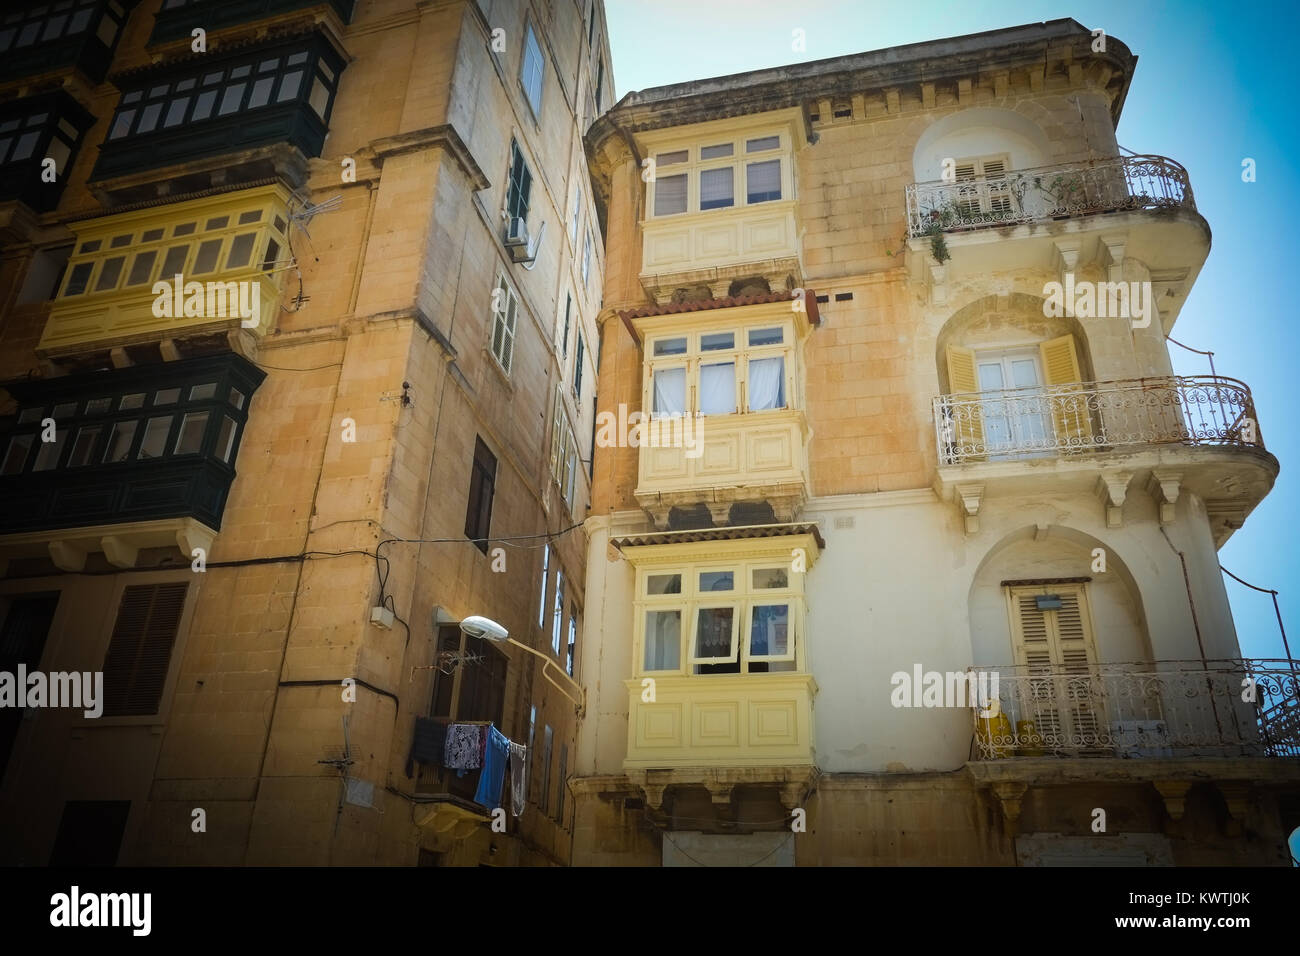 Appartamenti tradizionali con i loro balconi in legno, ferro rot terrazze, a La Valletta, la capitale europea della cultura 2018, Malta. Foto Stock